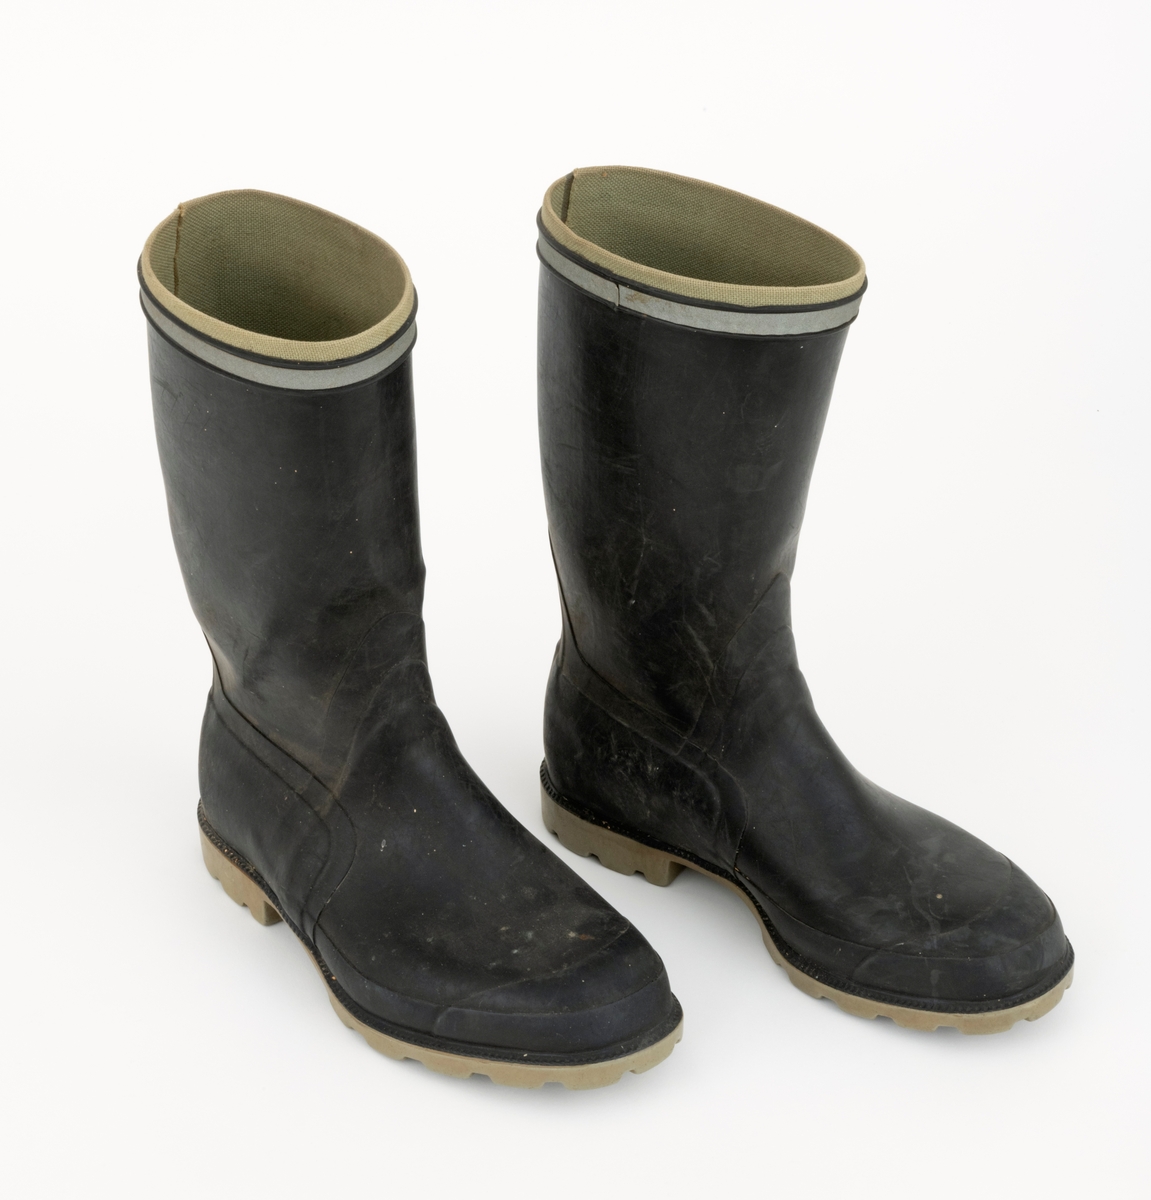 Gummistøvler eller langstøvler - vanntett fottøy med høye skaft - brukt under vandring på vått underlag utendør, sannsynligvis også i fjøs, der det var møkk på golvene. Dette støvleparet ble antakelig brukt av småbrukeren Iver Eide (1886-1976) fra Tolga på hans eldre dager. Støvlene har grålige såler med markerte hæler, og med 4,5 - 5,5 millimeter djupt riflemønster, som antakelig skulle forebygge at den som gikk med støvlene skled på glatt underlag. Ellers er støvlenes ytterflater lagd av mørkebrun, nesten svart gummi, som er noe tjukkere og mer solid langs sålene og mot hælene enn over vristpartiene og i skaftene. Rundt skaftenes overender er det pålimt cirka 1 centimeter brede refleksband. Innvendig er gummien trukket med et finmasket striestoff. Støvlene har innlagte såler av et tynt pappmateriale. Produsentens logo - en slags borg med tre tårn og firmnavnet «TRETORN», samt «MADE IN SWEDEN» og størrelsesbetegnelsen «40» - innstøpt på undersidene av sålene. Støvlebrukeren har tråkket en liten jernstrift inn i den høyre såla.